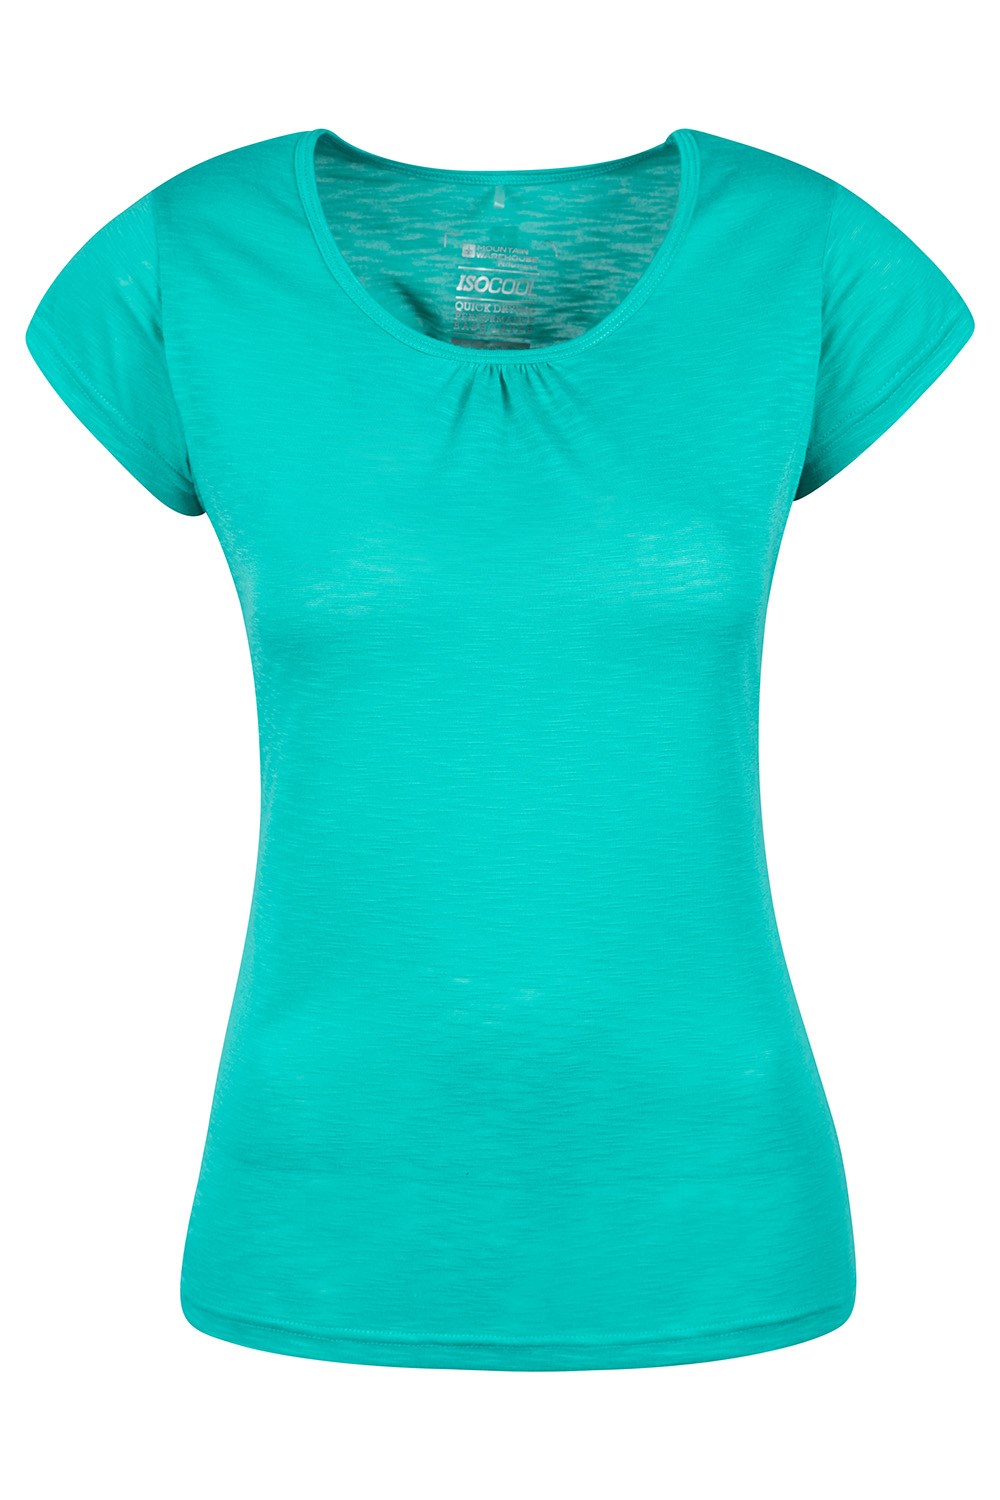 Senderismo y Uso Informal Mountain Warehouse Agra Camiseta para Mujer Secado rápido para Deportes al Aire Libre de Verano Transpirable Absorbente Ligera 